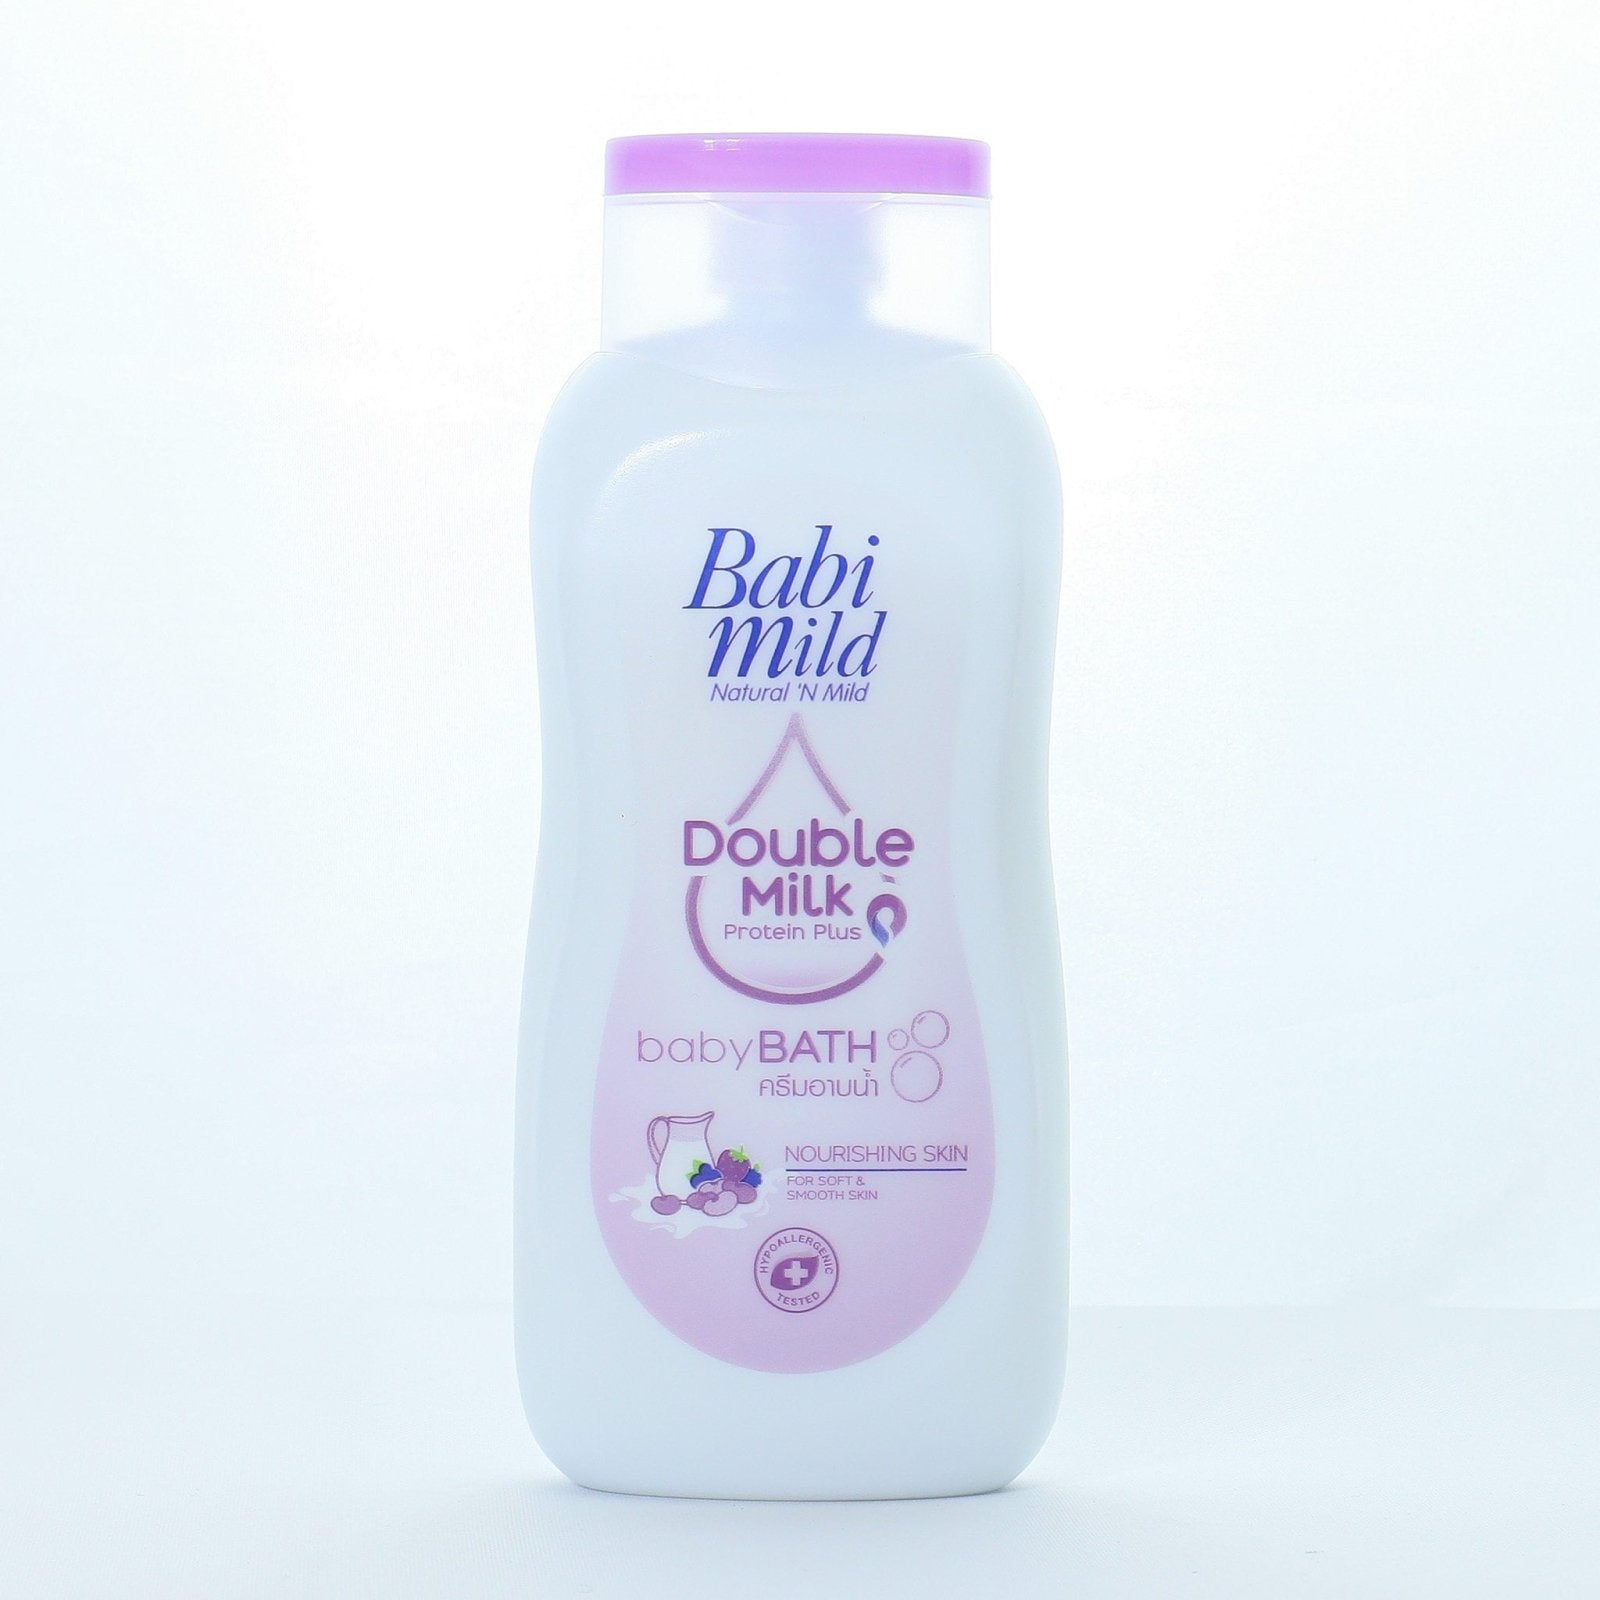 Baby Bath Double Milk Protein Plus 180ml | Babi Mild - Zubaidas Mothershop